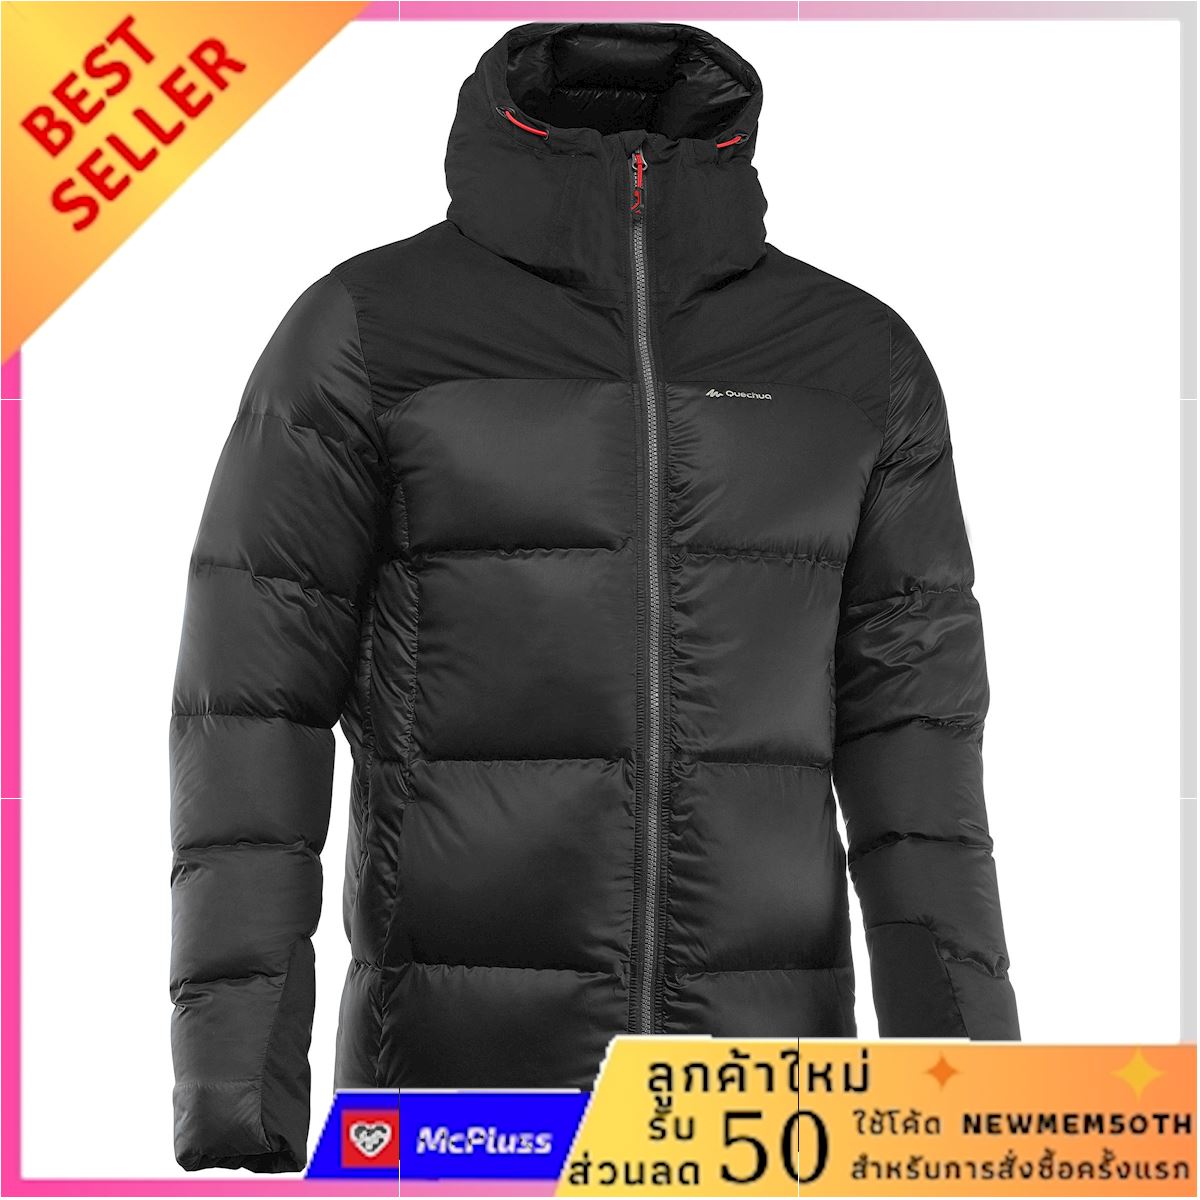 เสื้อแจ็คเก็ตดาวน์สำหรับผู้ชายใส่เทรคกิ้งบนภูเขารุ่น TREK 900 (สีดำ) ราคาถูกที่สุด